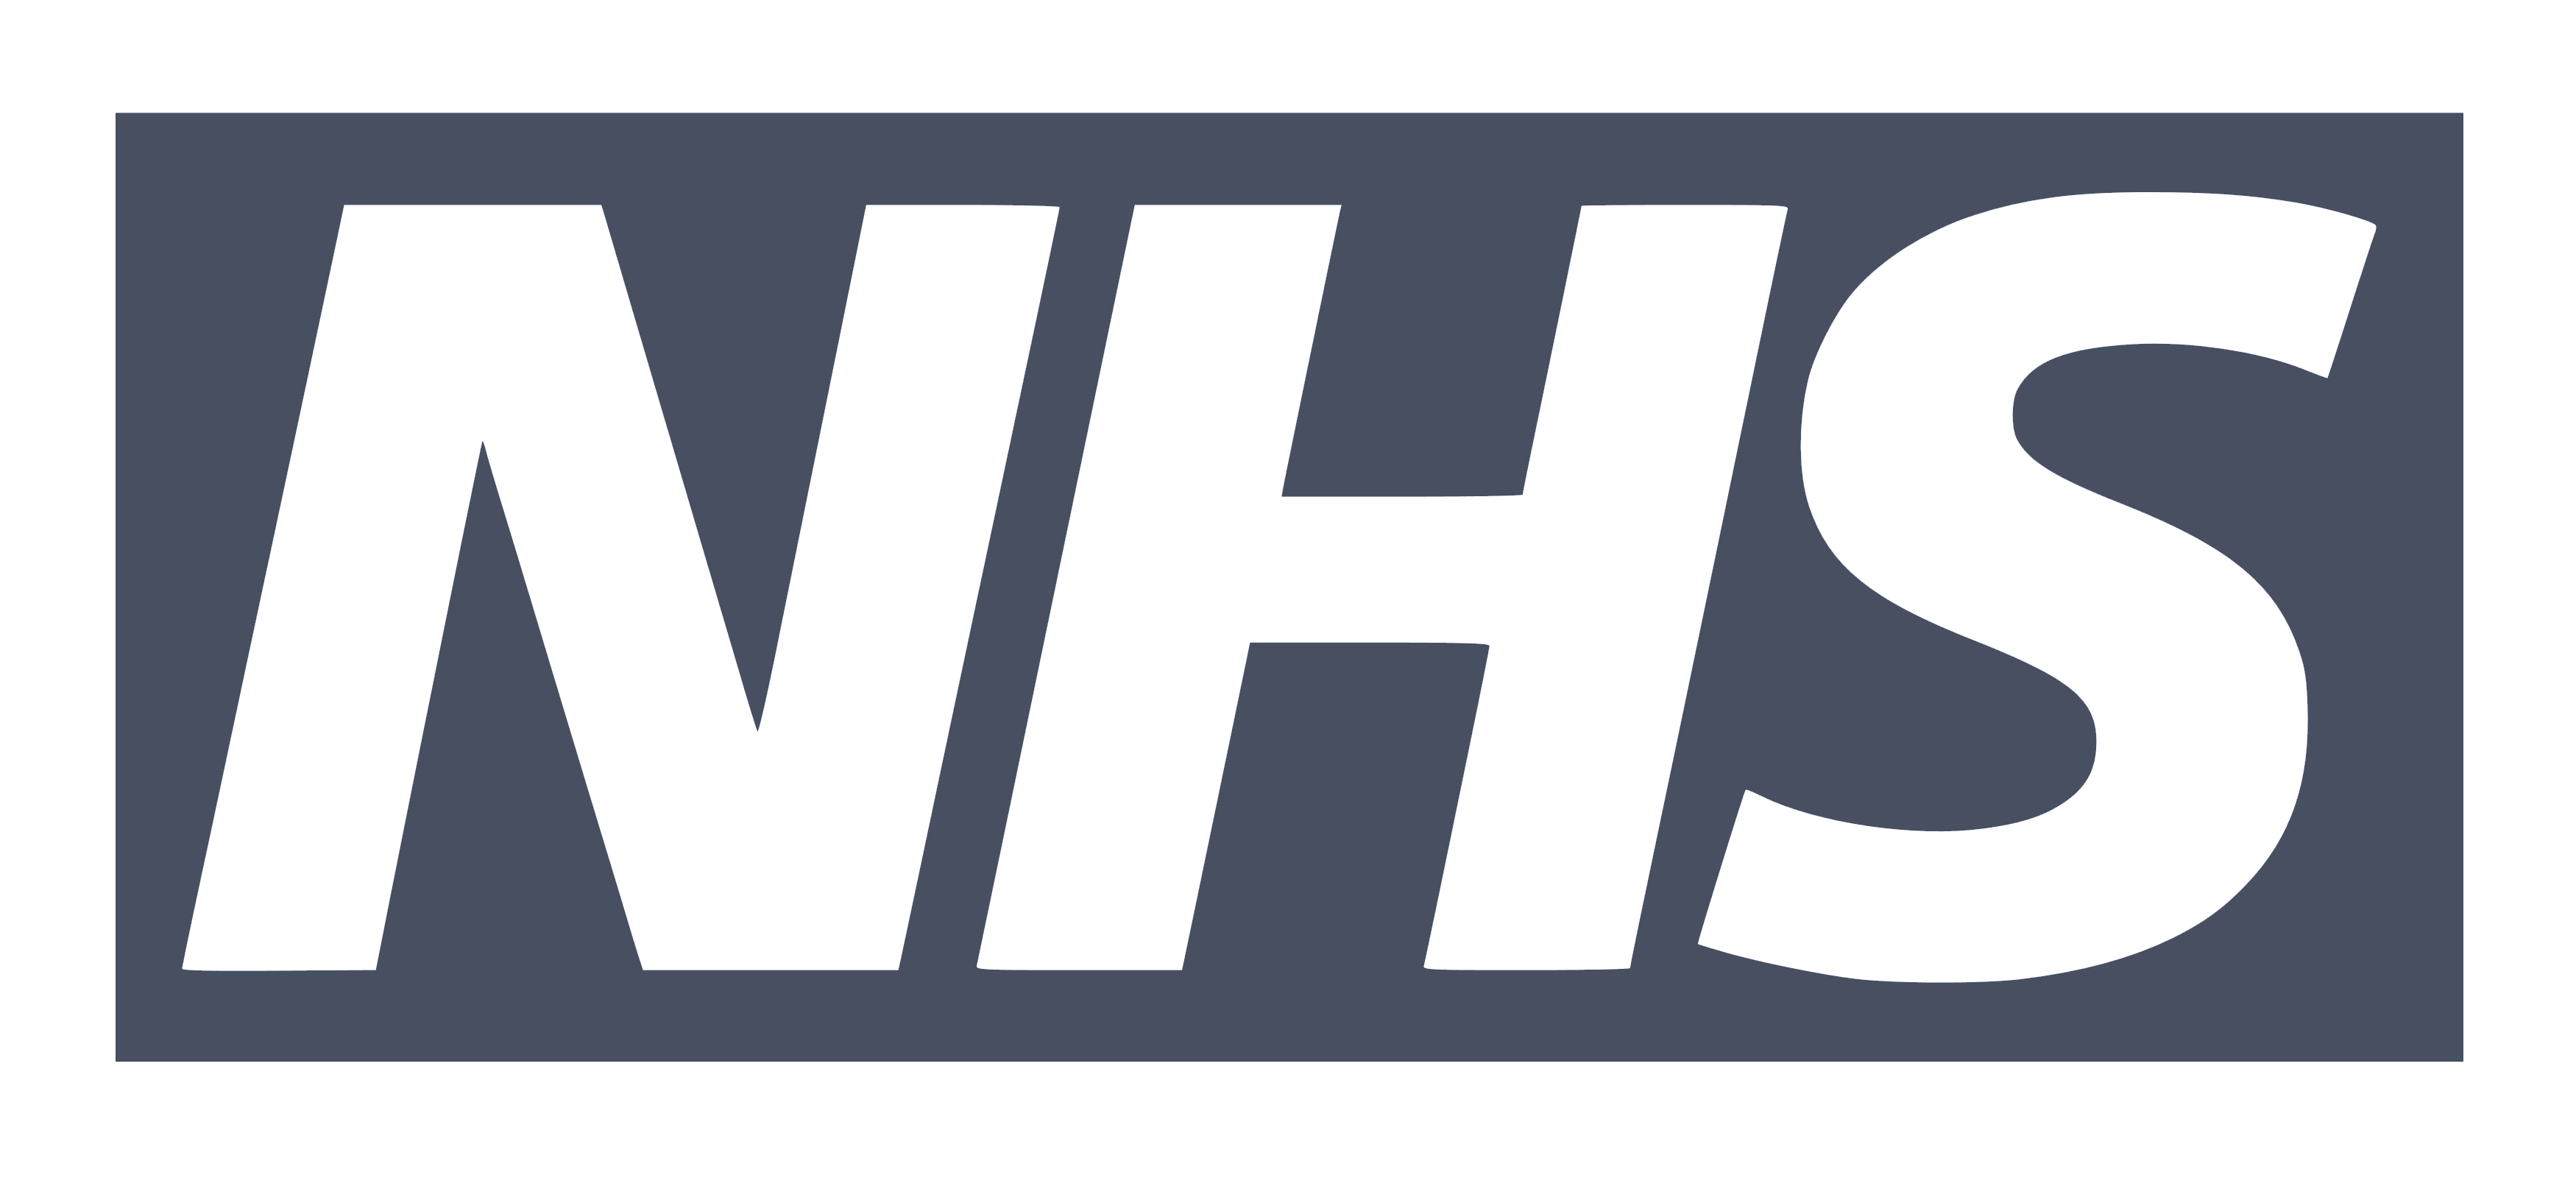 NHS-logo-heartlands-conference-center